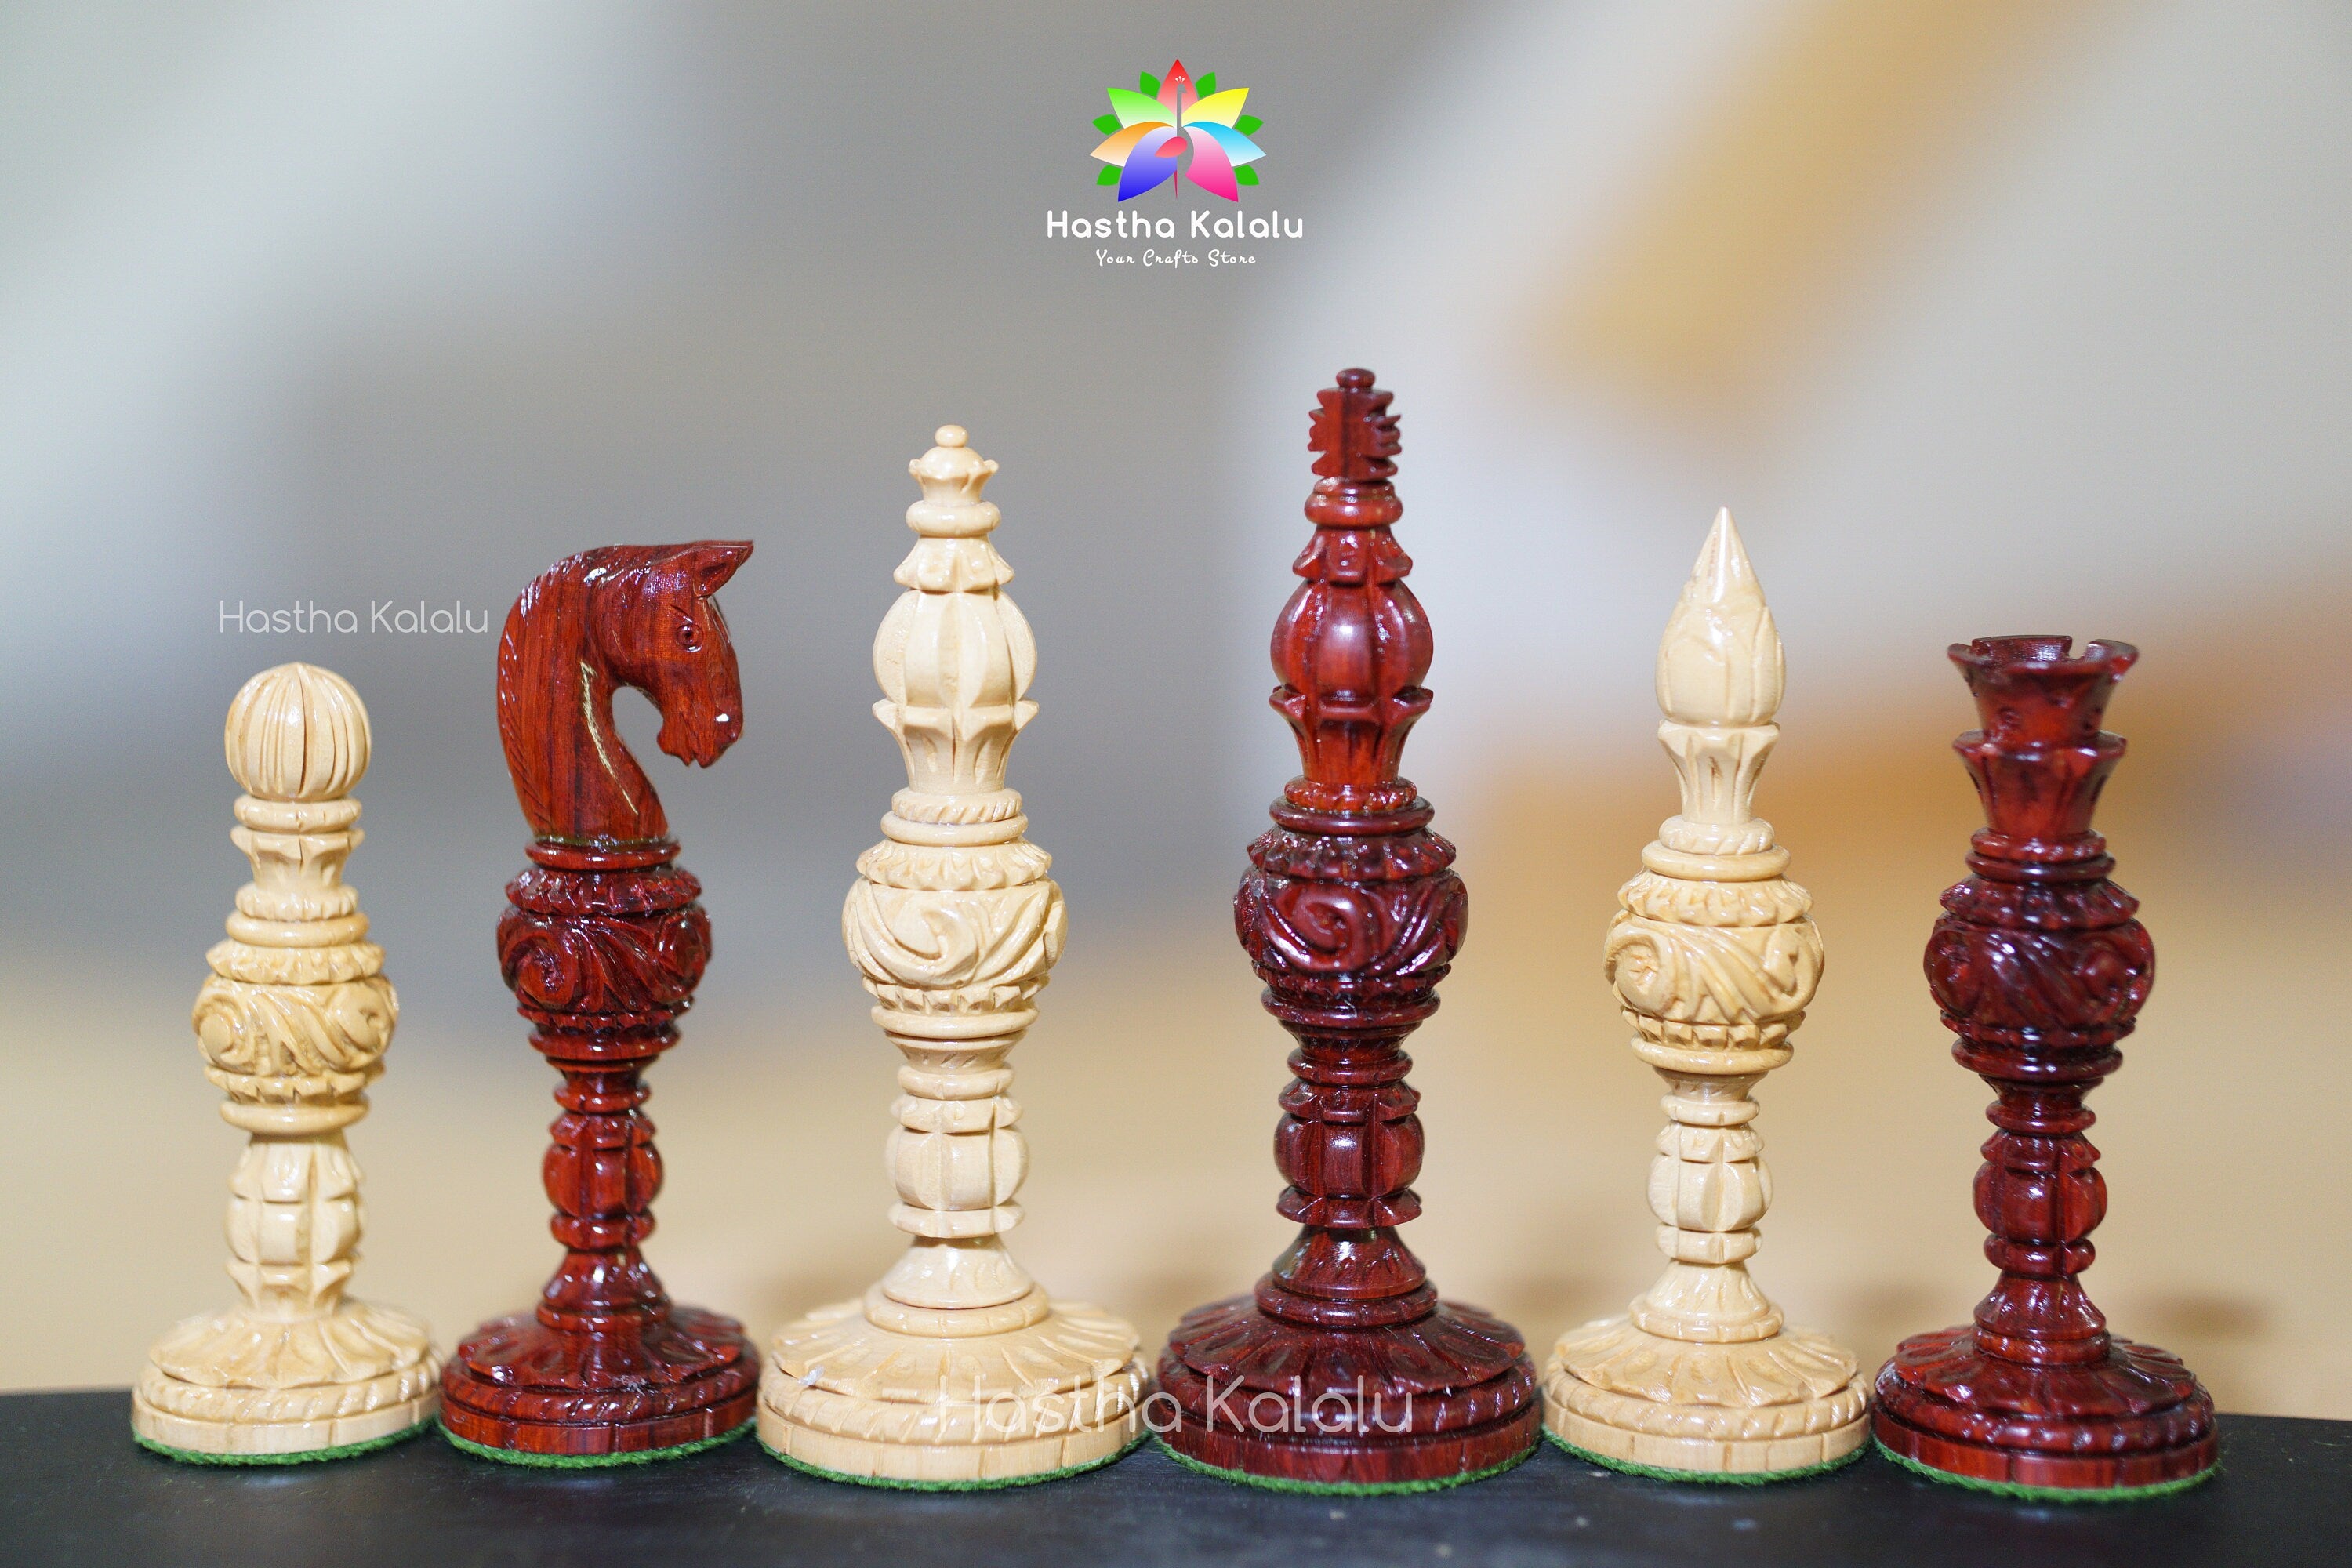 大放出セール開催中 チェス コマのみ Hastha Kalalu Official Tournament Staunton Style Chess  Pieces Only Set， German Knight Luxury Wooden Hand Carved Wei